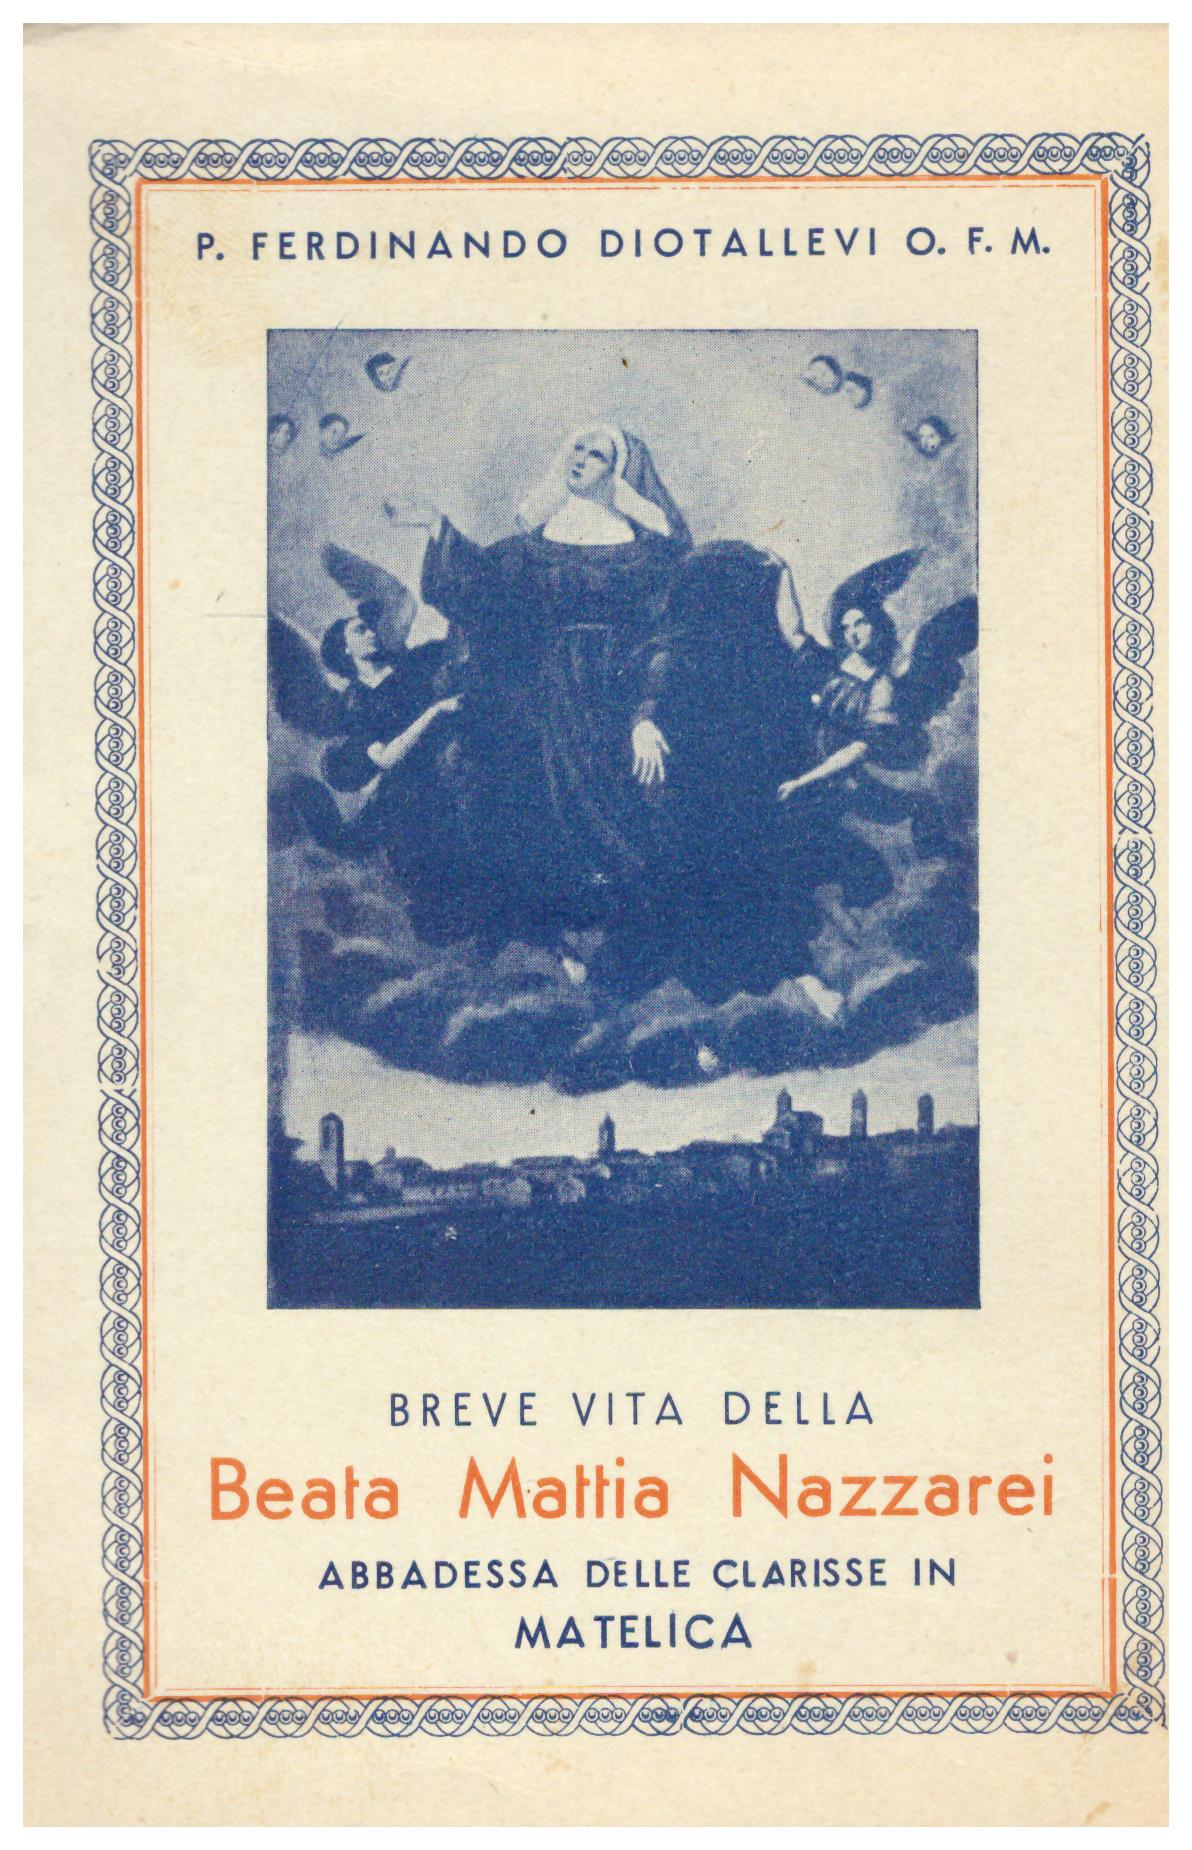 Titolo: Breve vita della beata Mattia Nazzarei    Autore: Padre Ferdinando Diotallevi    Editore: casa editrice pro famila Milano-Roma 1938